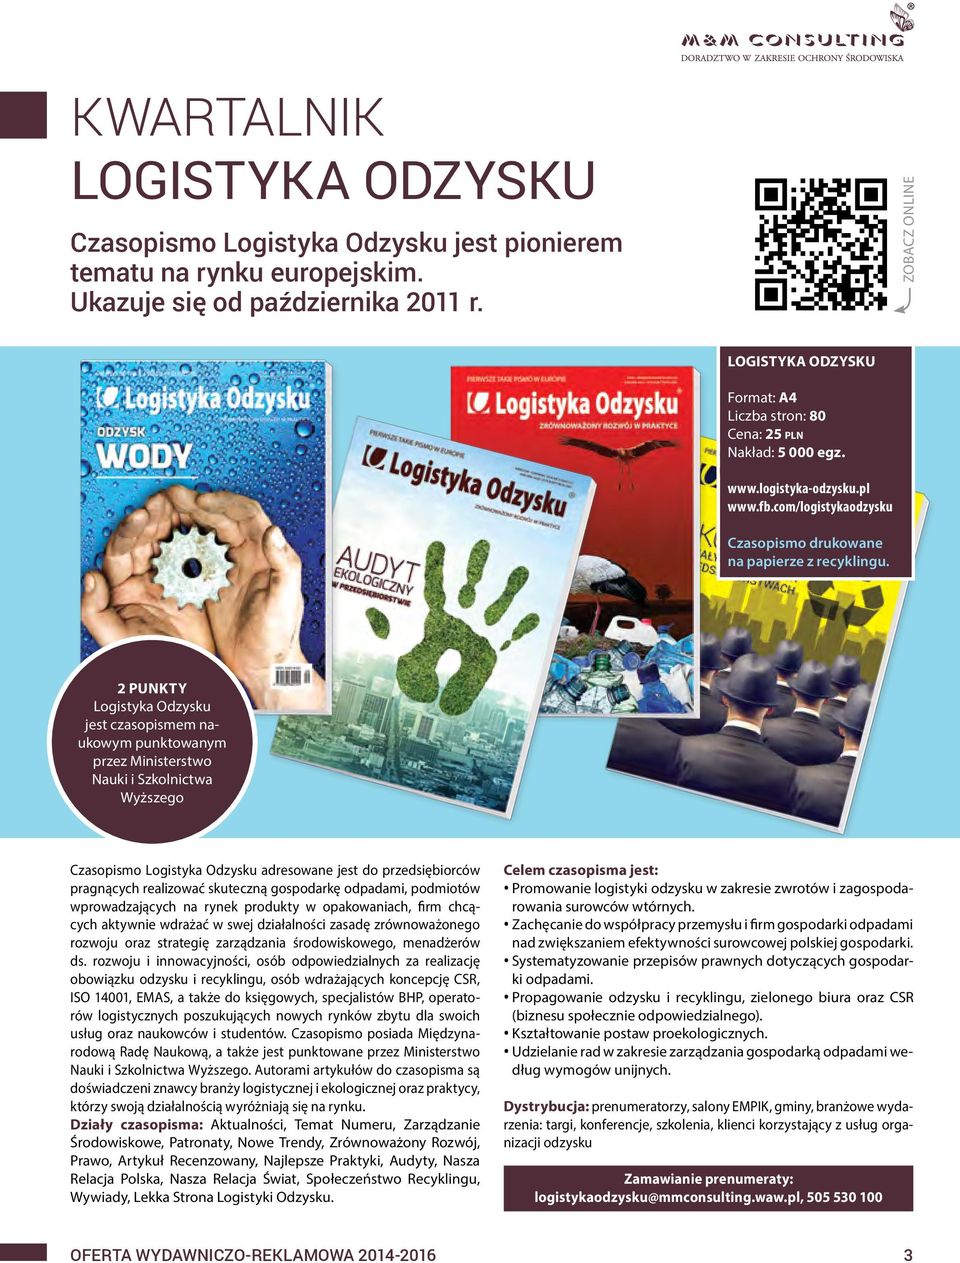 2 punkty Logistyka Odzysku jest czasopismem naukowym punktowanym przez Ministerstwo Nauki i Szkolnictwa Wyższego Czasopismo Logistyka Odzysku adresowane jest do przedsiębiorców pragnących realizować